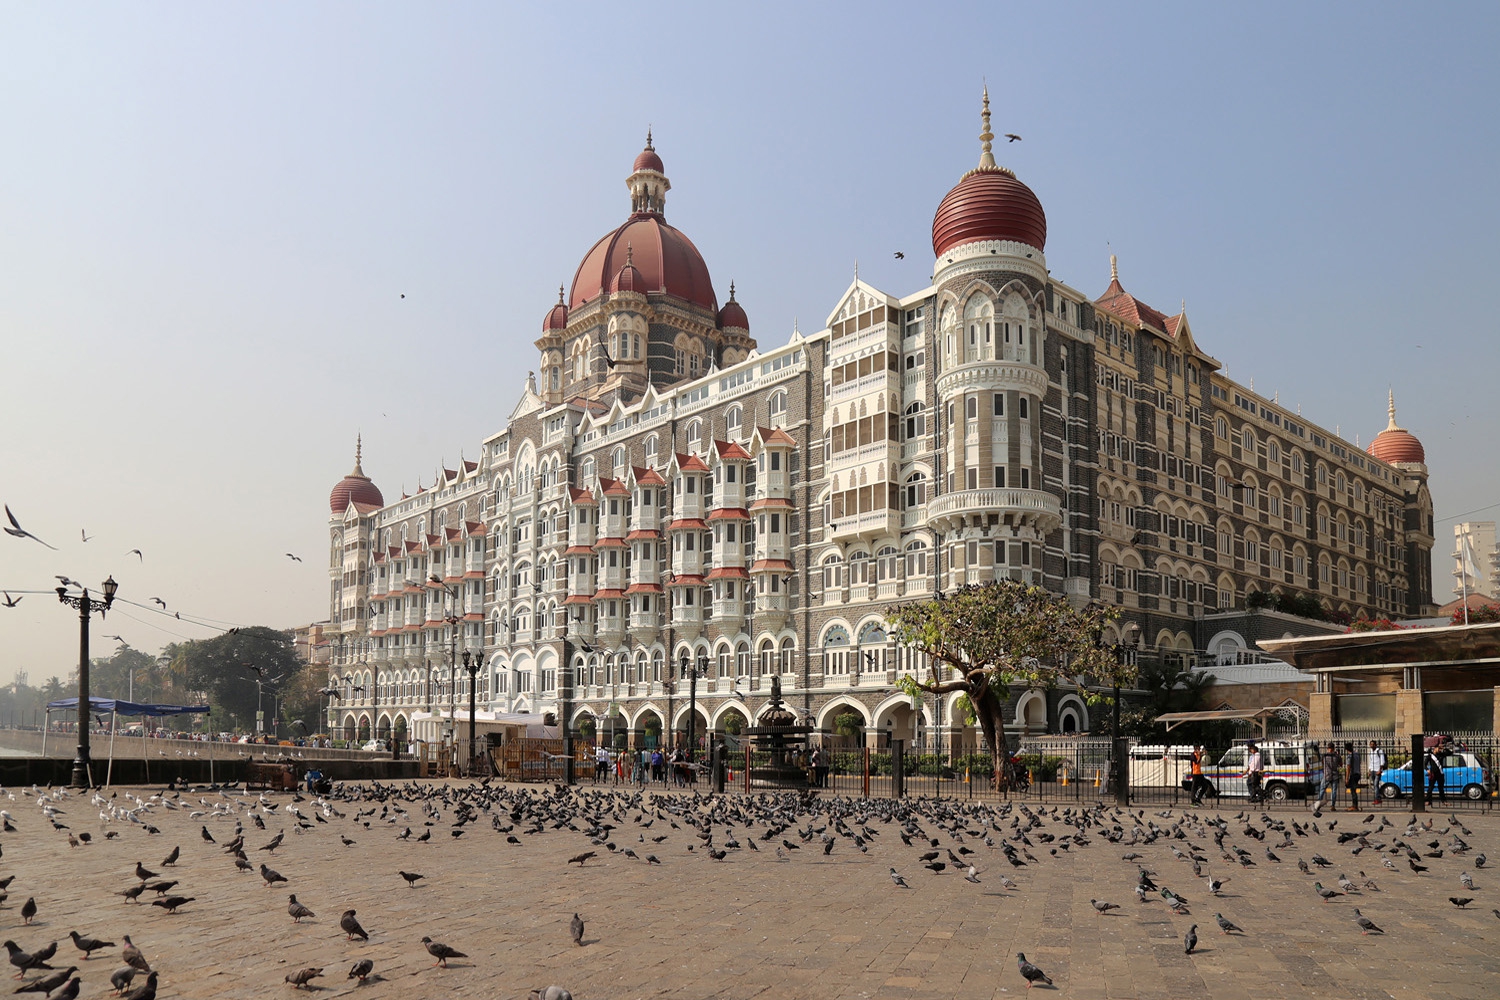 bill-hocker-reconstructed-taj-mahal-palace-hotel-mumbai-india-2018